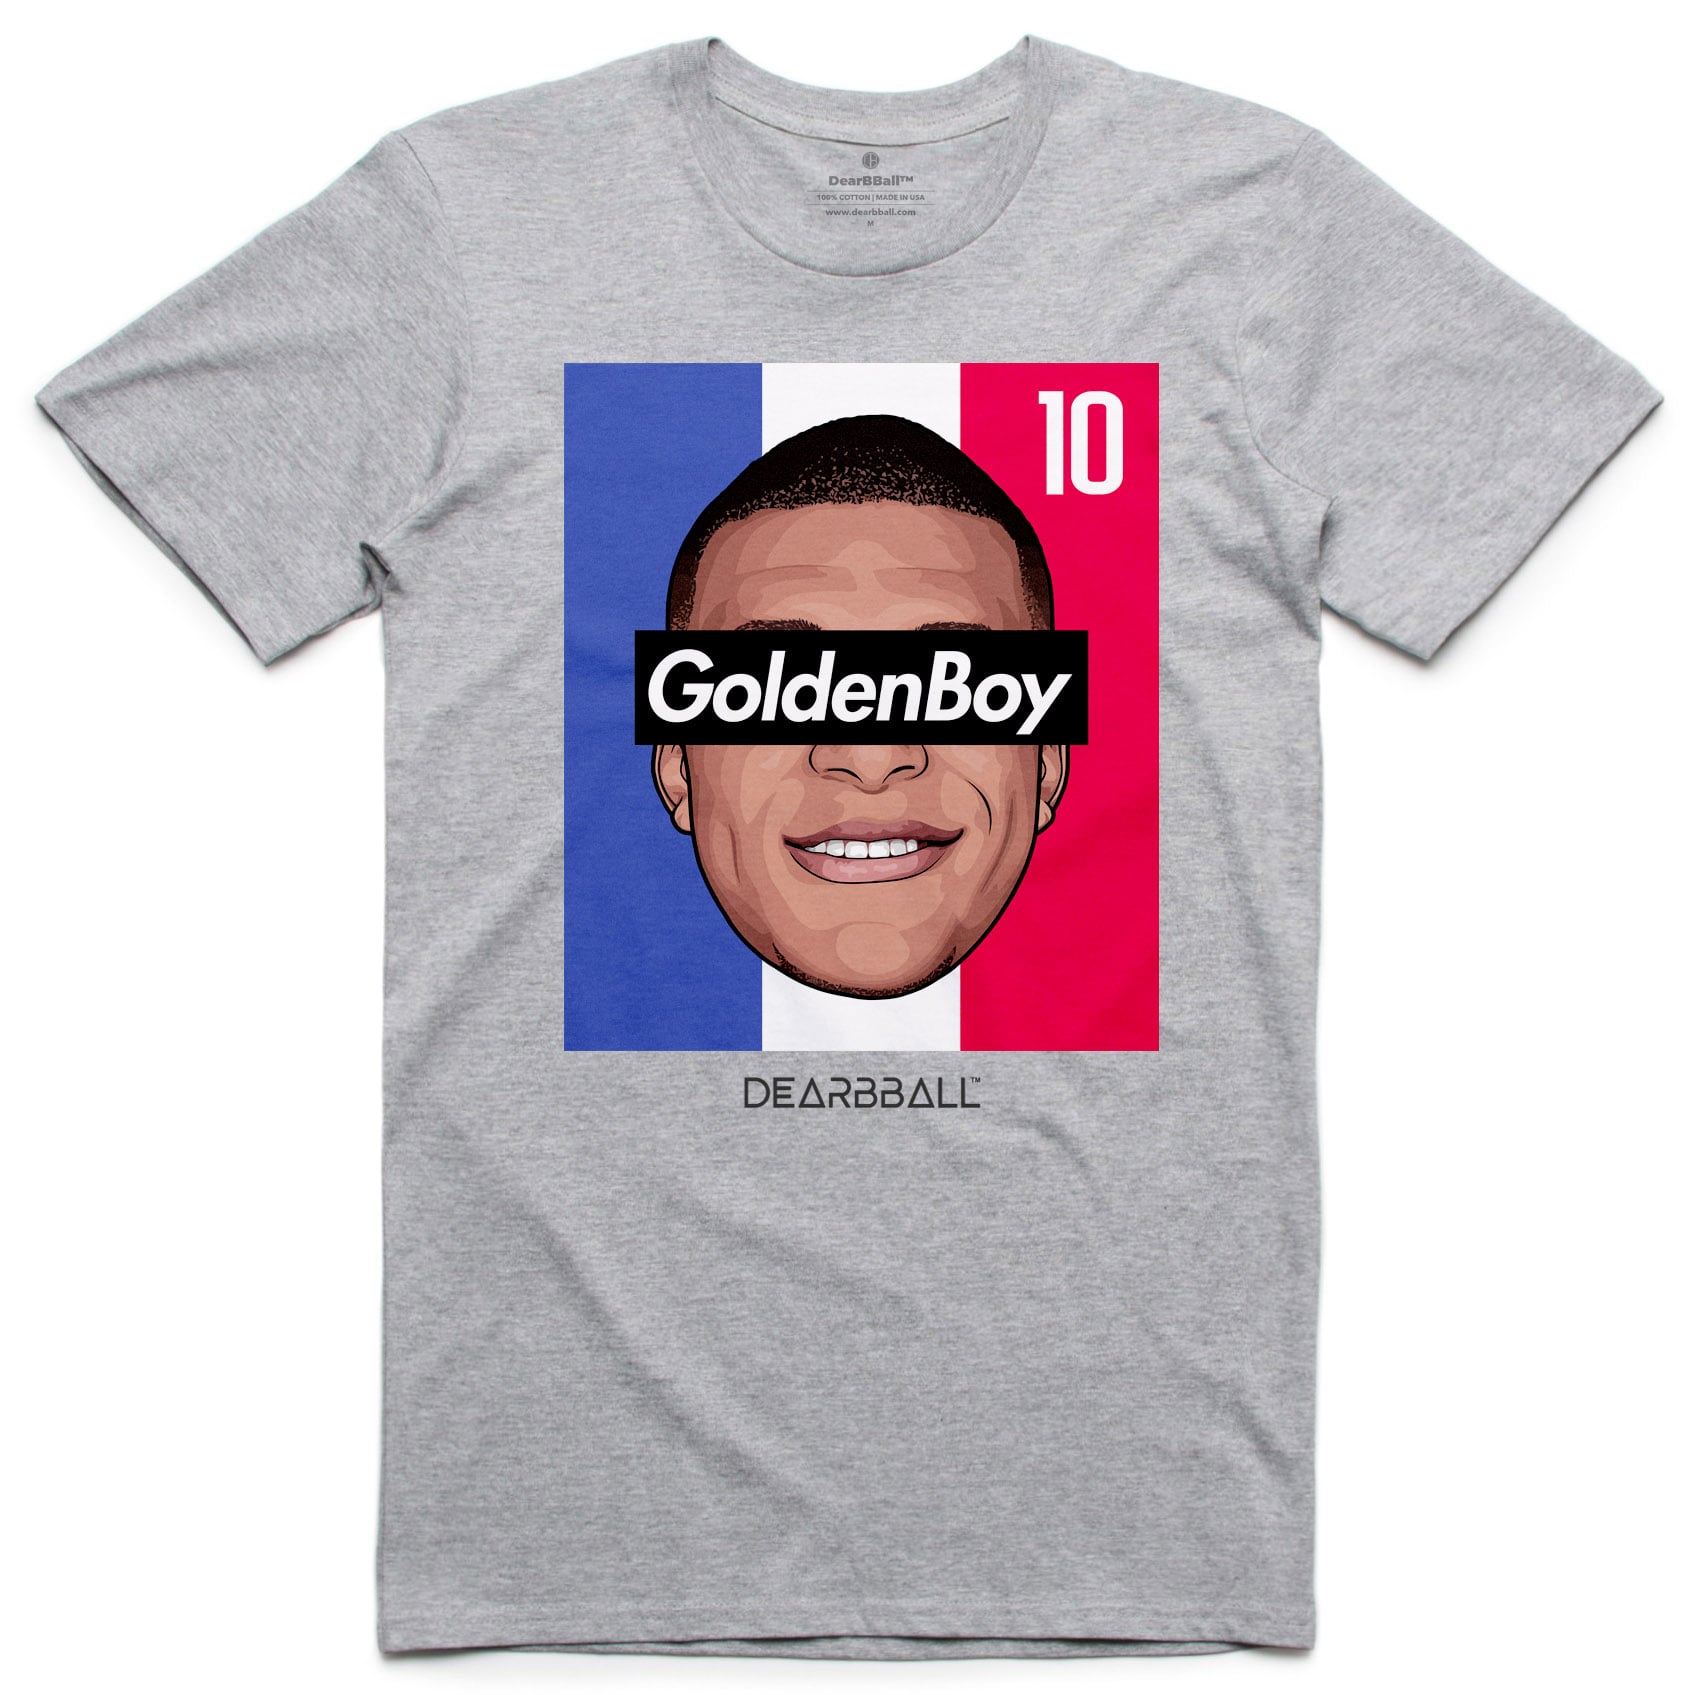 DearBBall T-Shirt - GoldenBoy 10 Tricolor